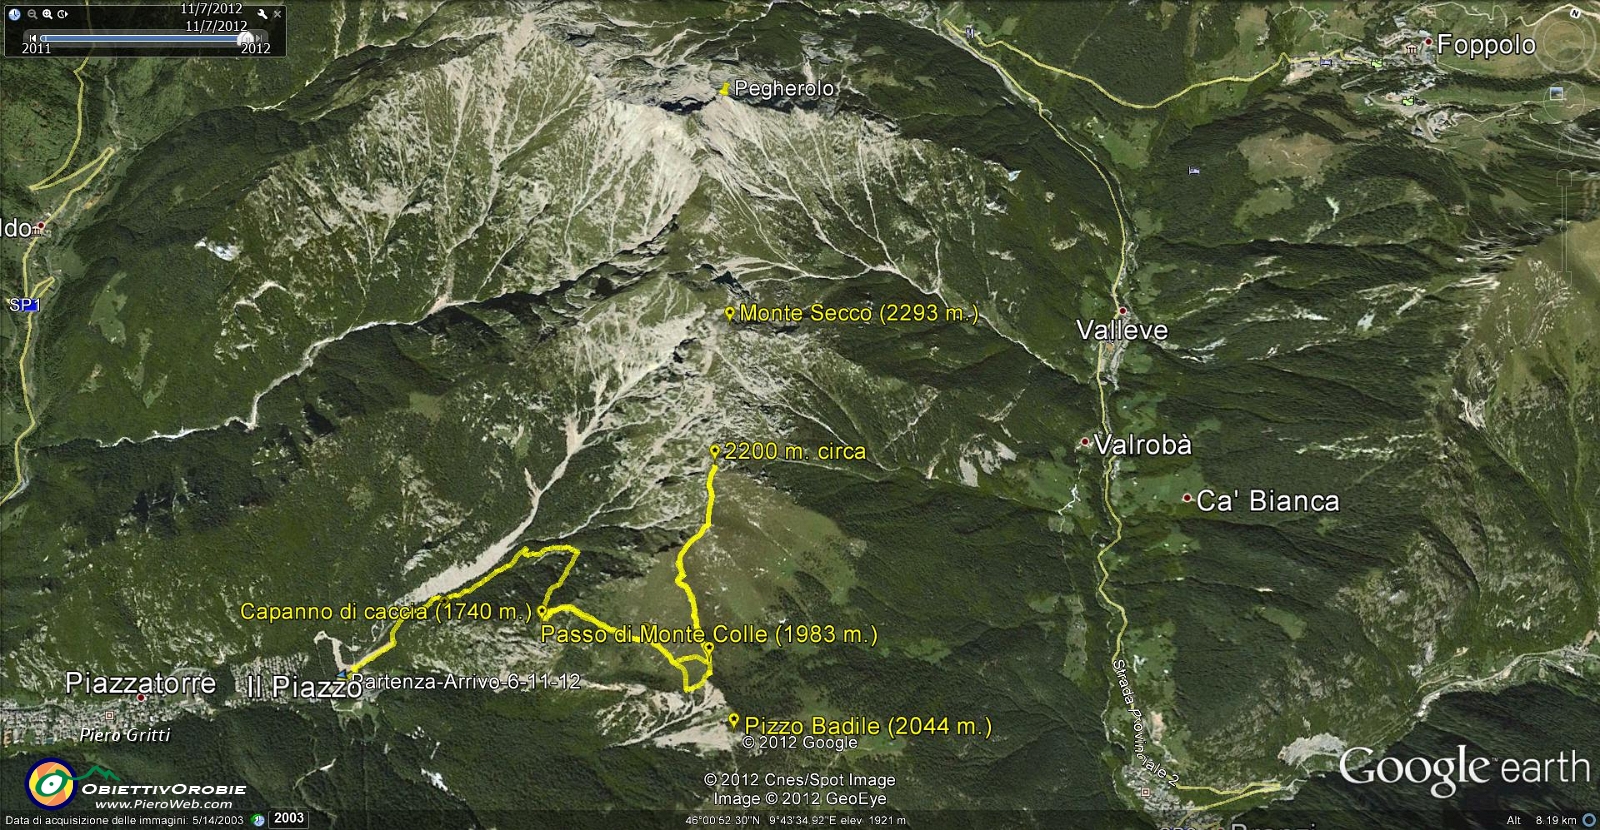 02 Tracciato GPS - Passo Momte Colle e verso Monte Secco .jpg